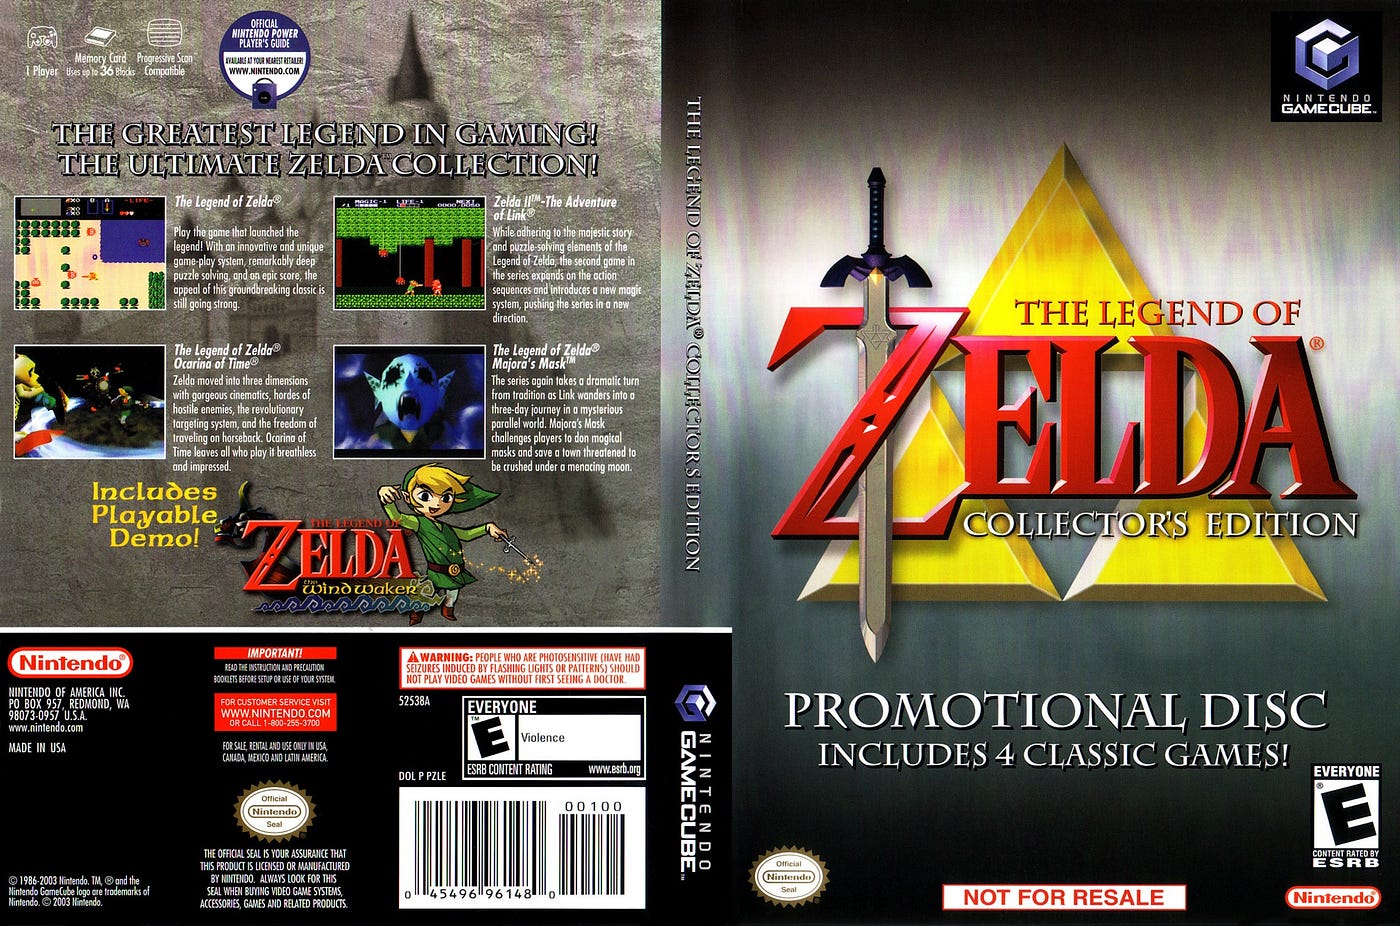 Versão beta de The Legend of Zelda: Ocarina of Time para N64 é descoberta